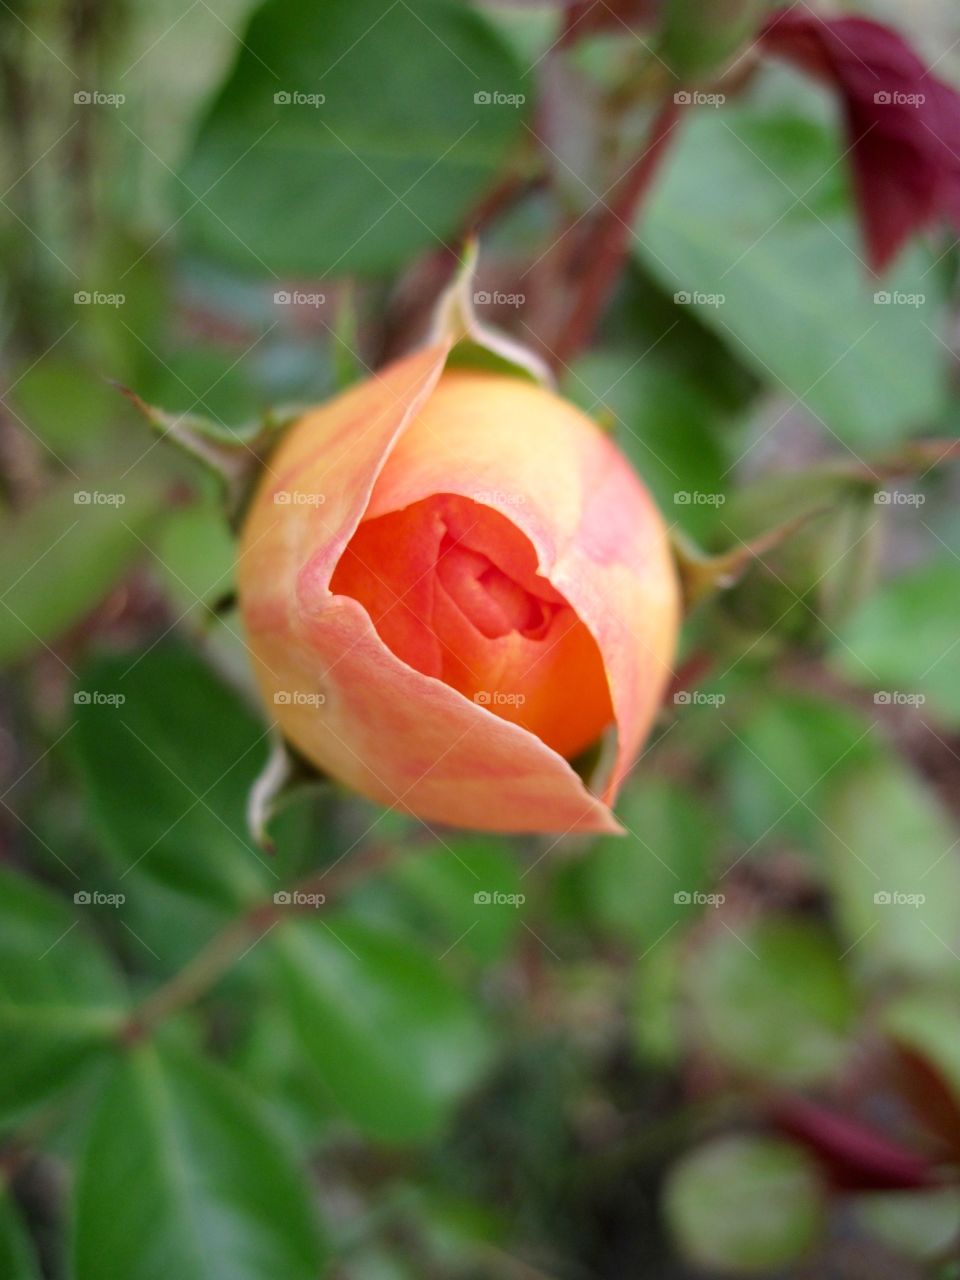 Rose bud; macro